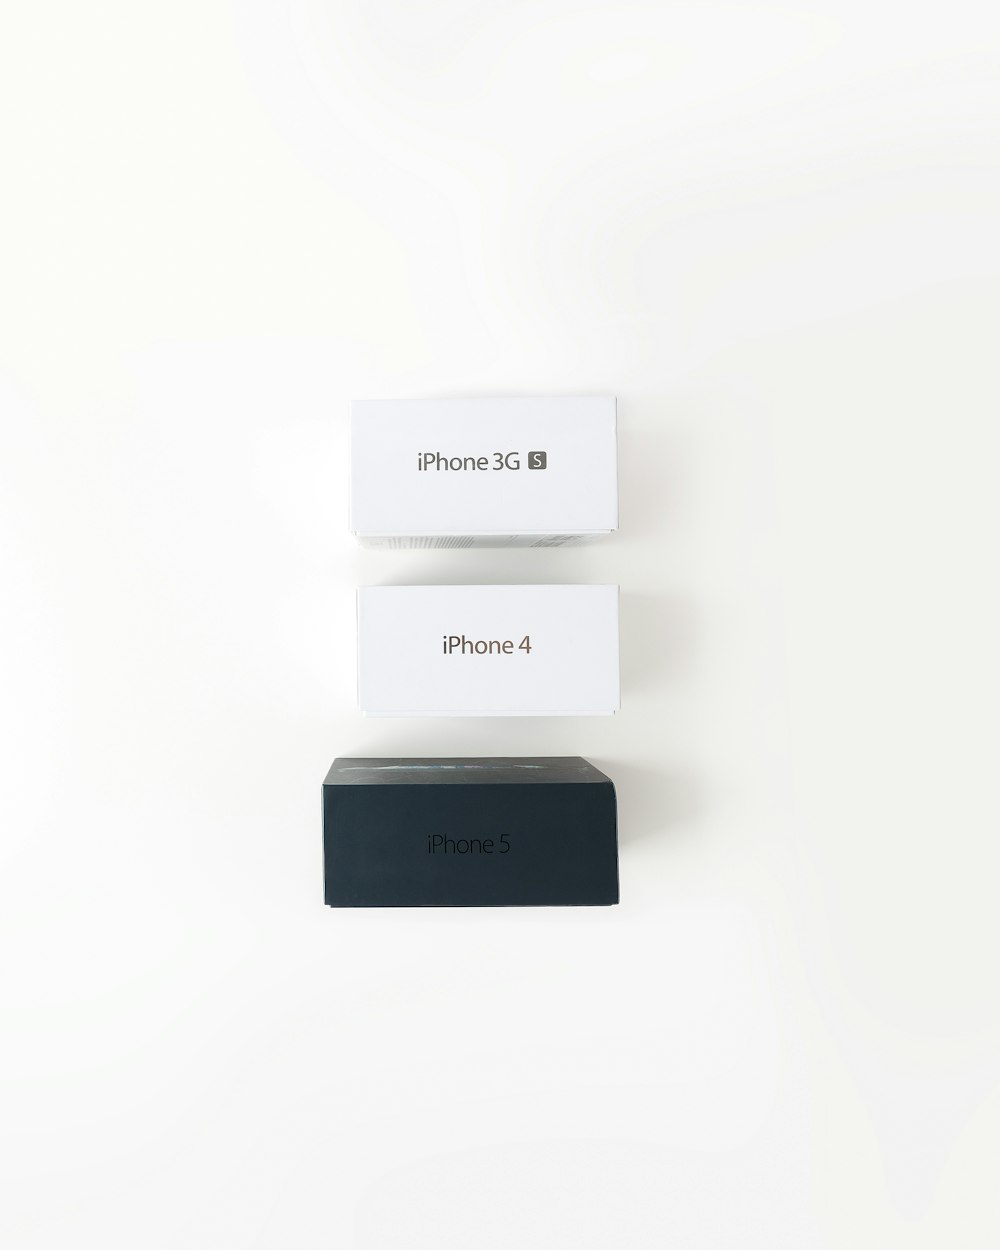 scatole per iPhone assortite su superficie bianca